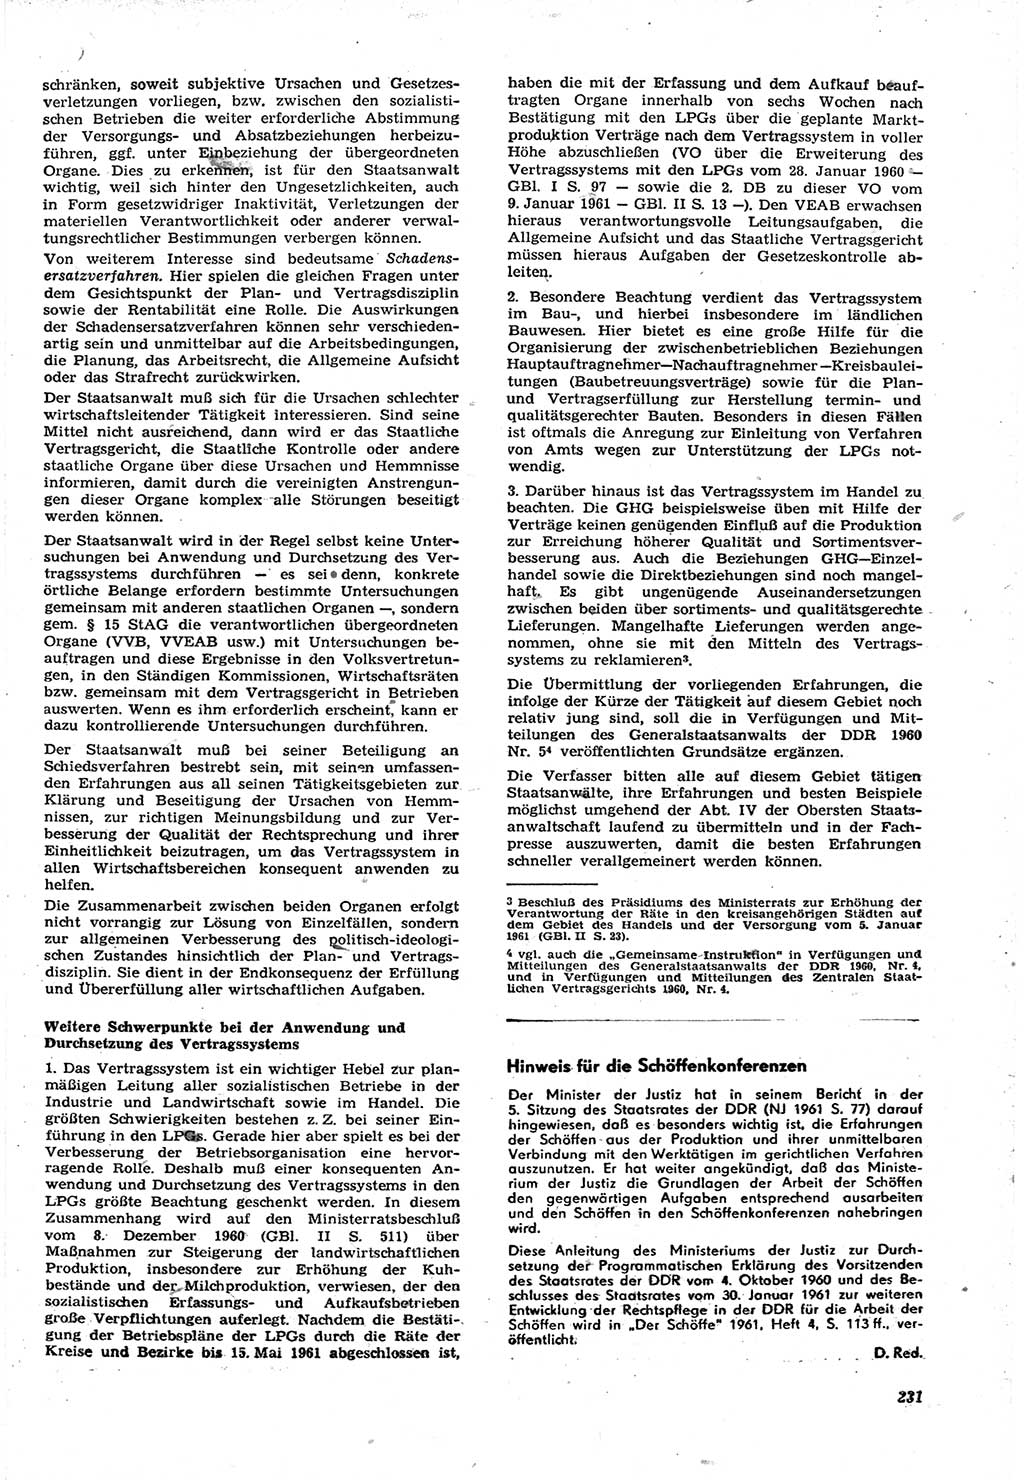 Neue Justiz (NJ), Zeitschrift für Recht und Rechtswissenschaft [Deutsche Demokratische Republik (DDR)], 15. Jahrgang 1961, Seite 231 (NJ DDR 1961, S. 231)